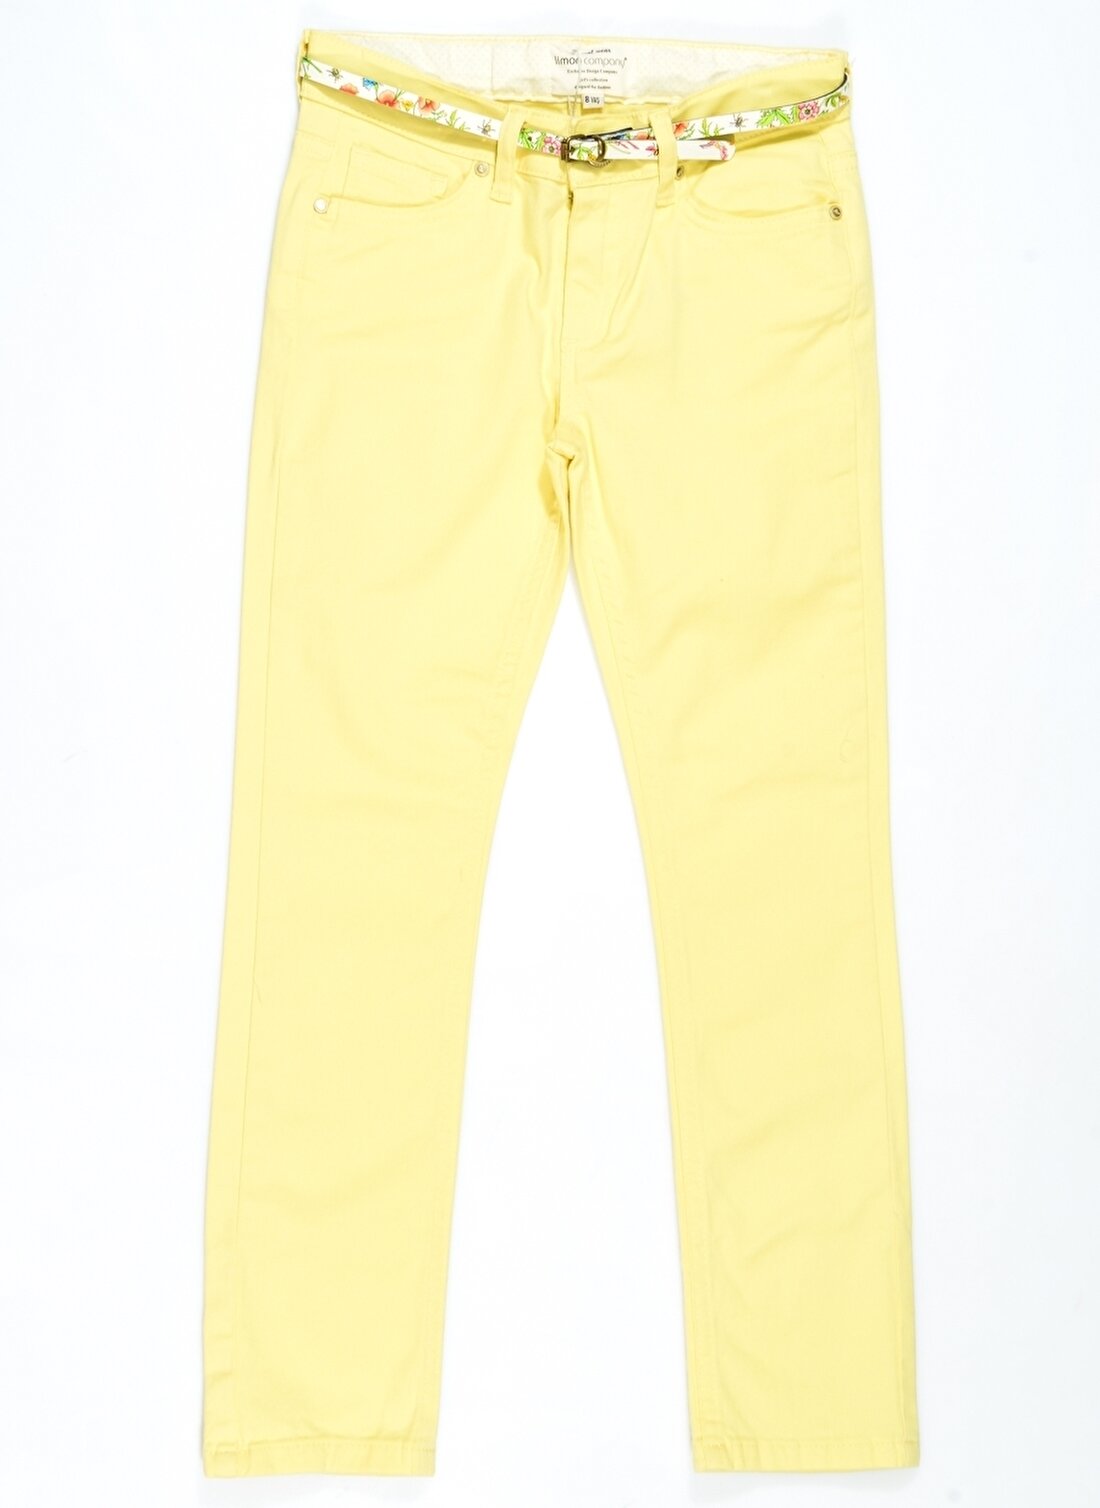 Limon Sarı Kız Çocuk Pantolon